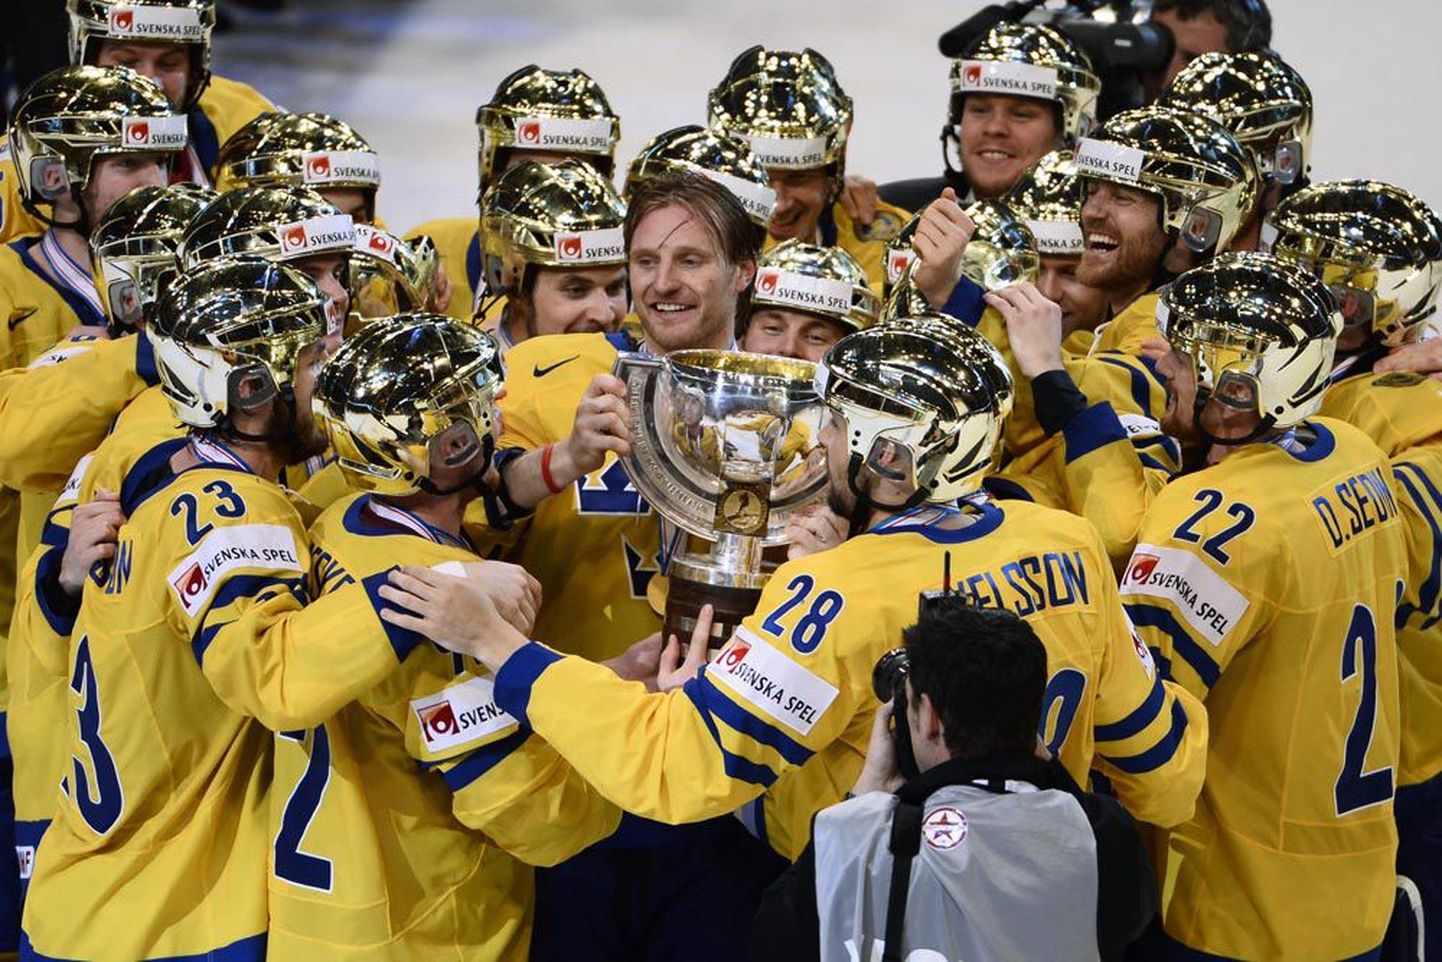 Rootsi hokimängijad võisid MMi finaali lõppedes teenitult pähe tõmmata kuldsed kiivrid.